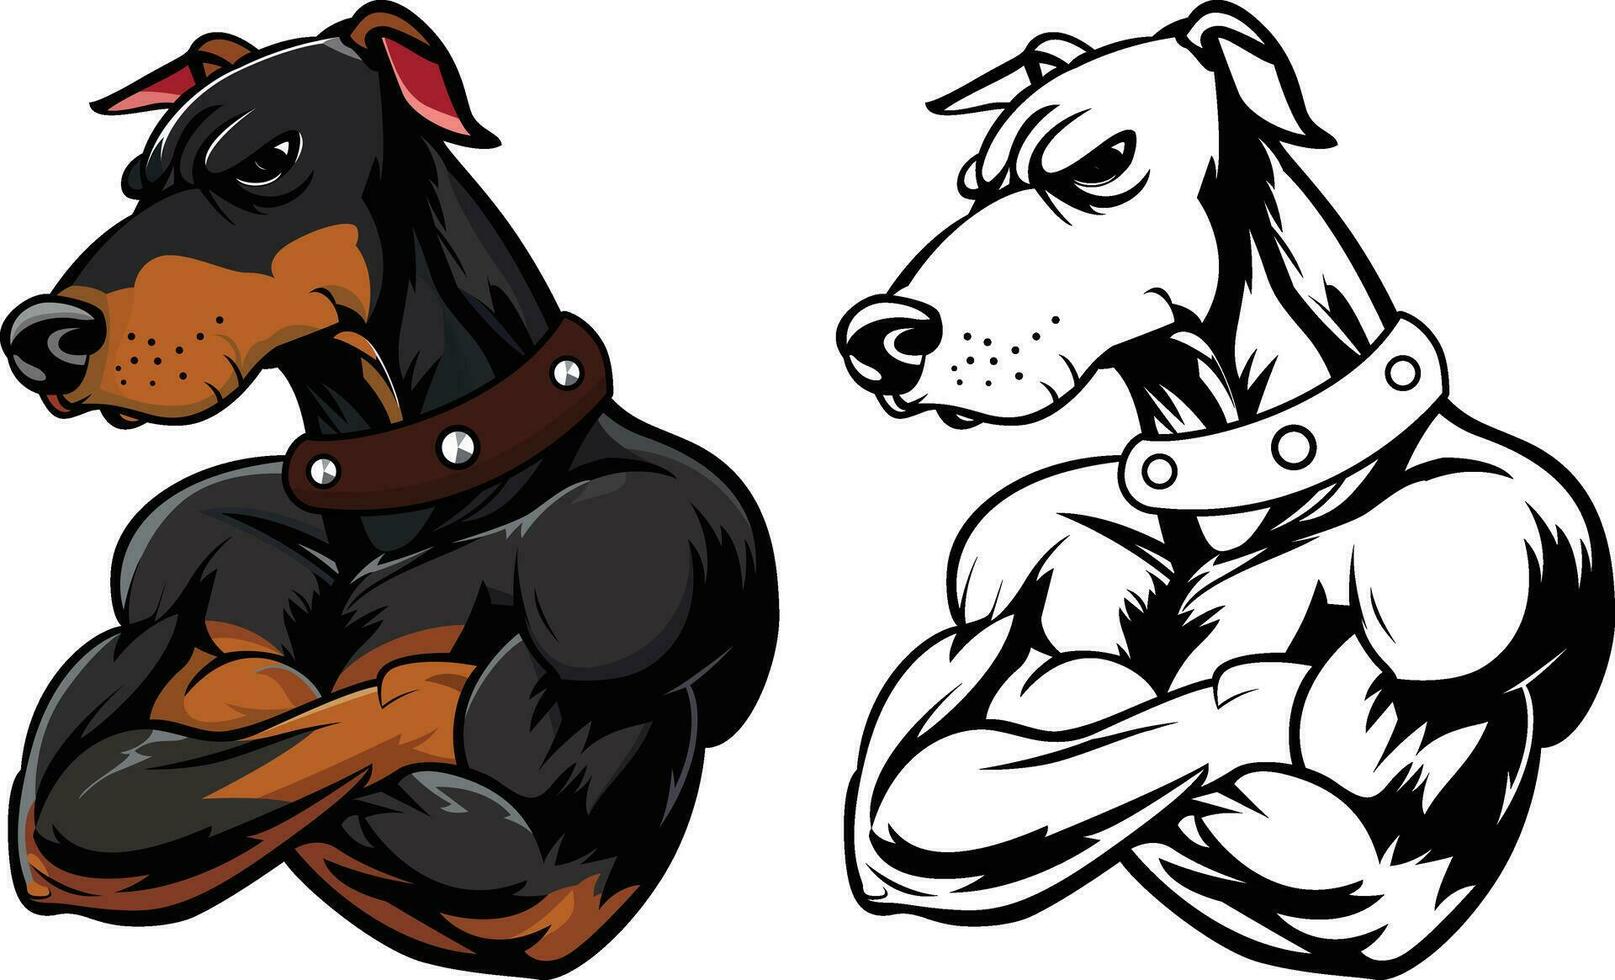 taai doberman pinscher bewaker hond vector illustratie, taai bewaker doberman of dobie hond armen gekruiste Aan borst vector afbeelding, gekleurde en zwart en wit mascotte karakter logo sjabloon